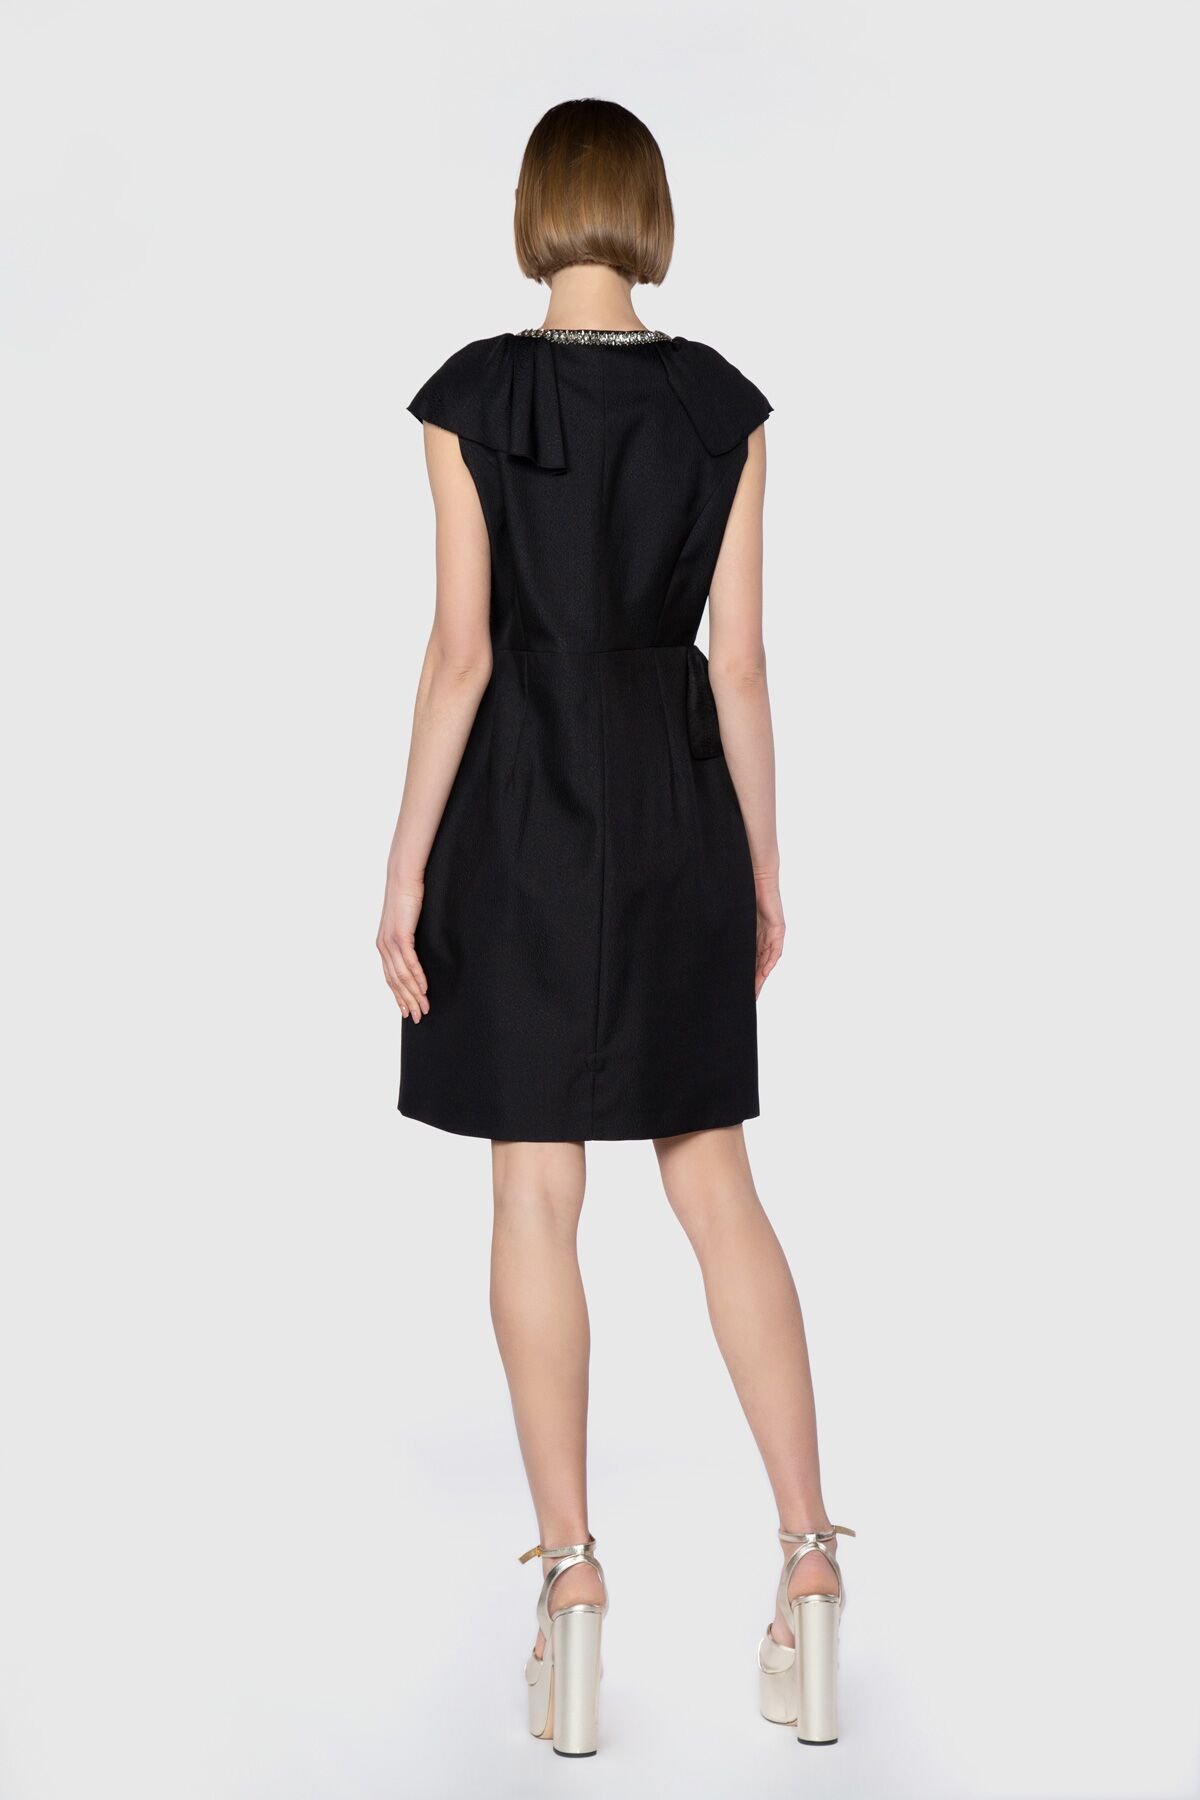 Dice Kayek Yakası İşlemeli Volan Detaylı Siyah Mini Tasarım Elbise